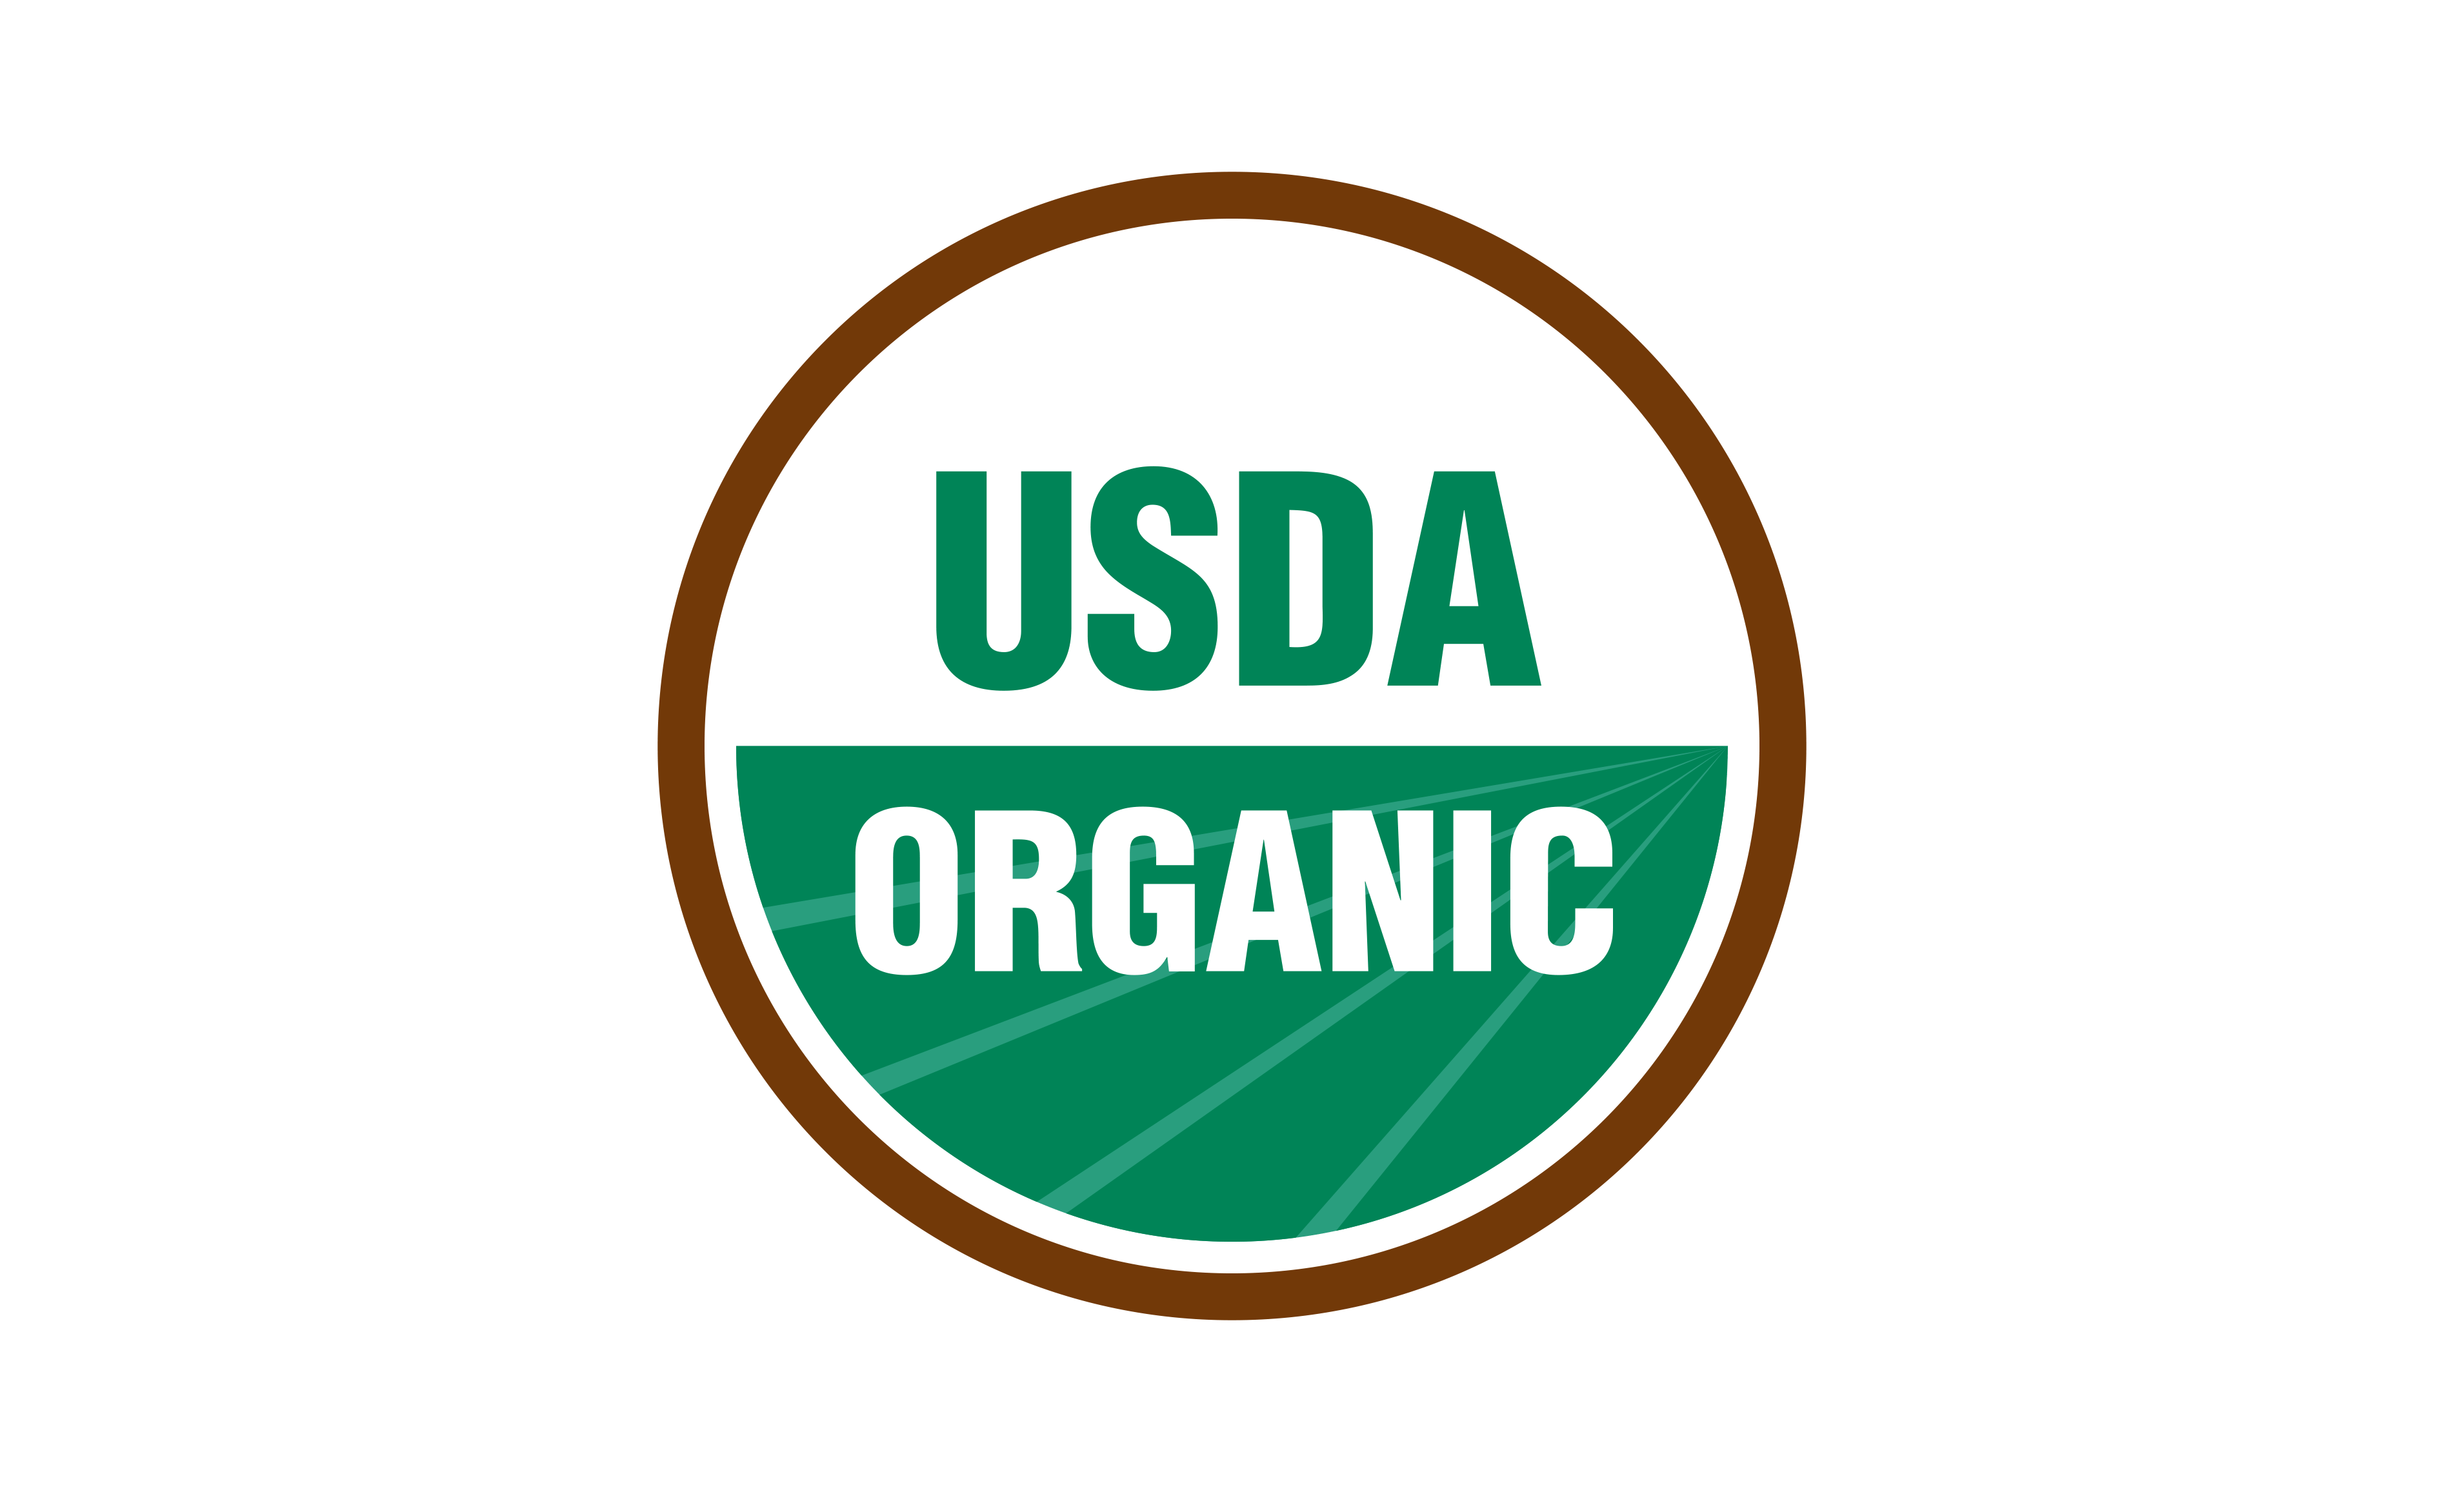 usda organic symbol